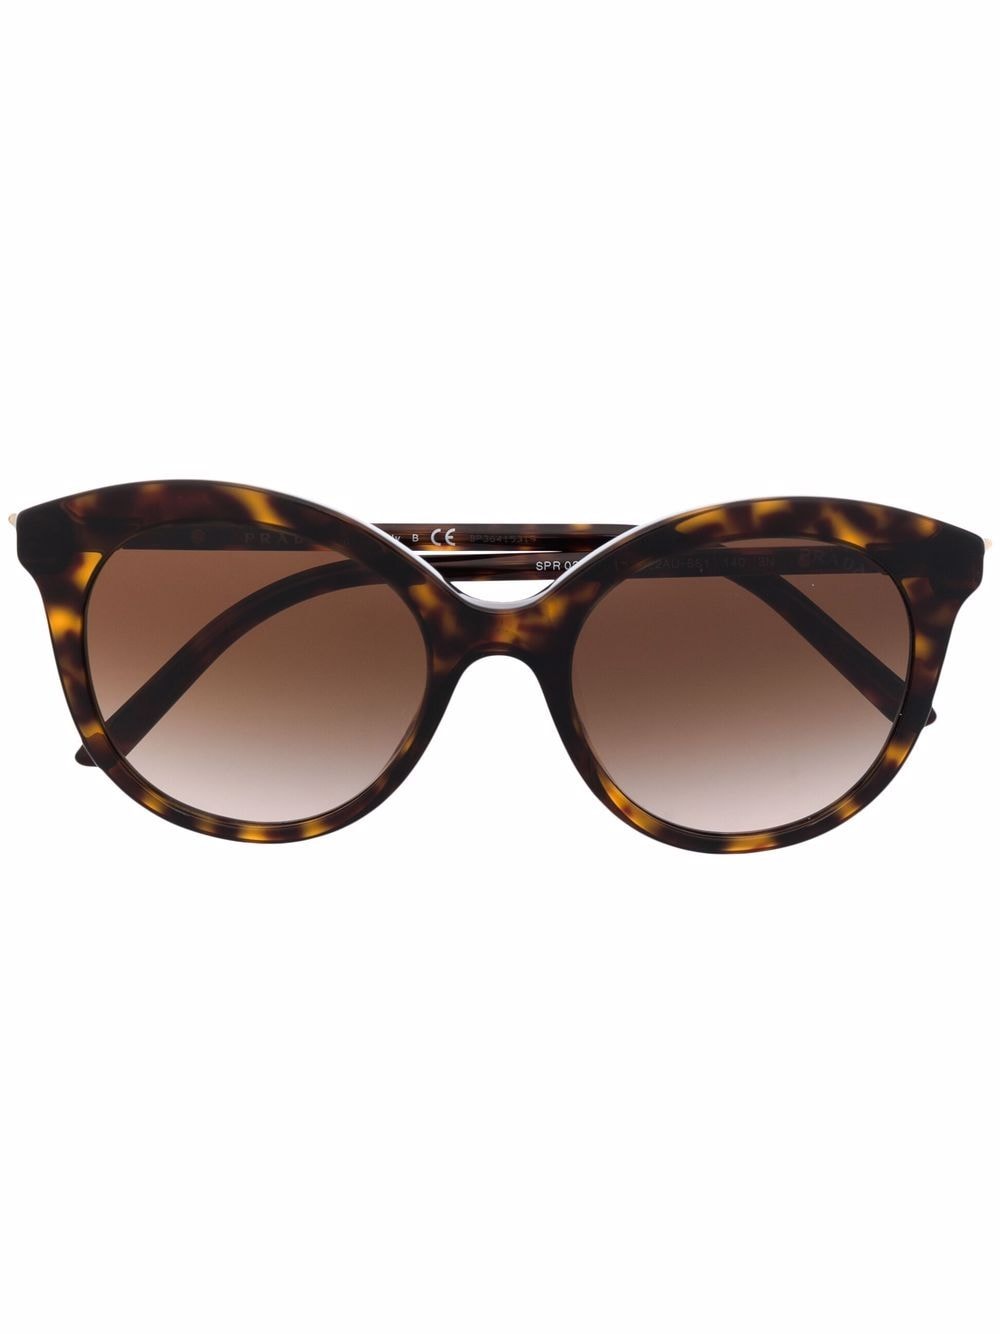 Prada Eyewear tortoiseshell cat-eye sunglasses - Brown von Prada Eyewear